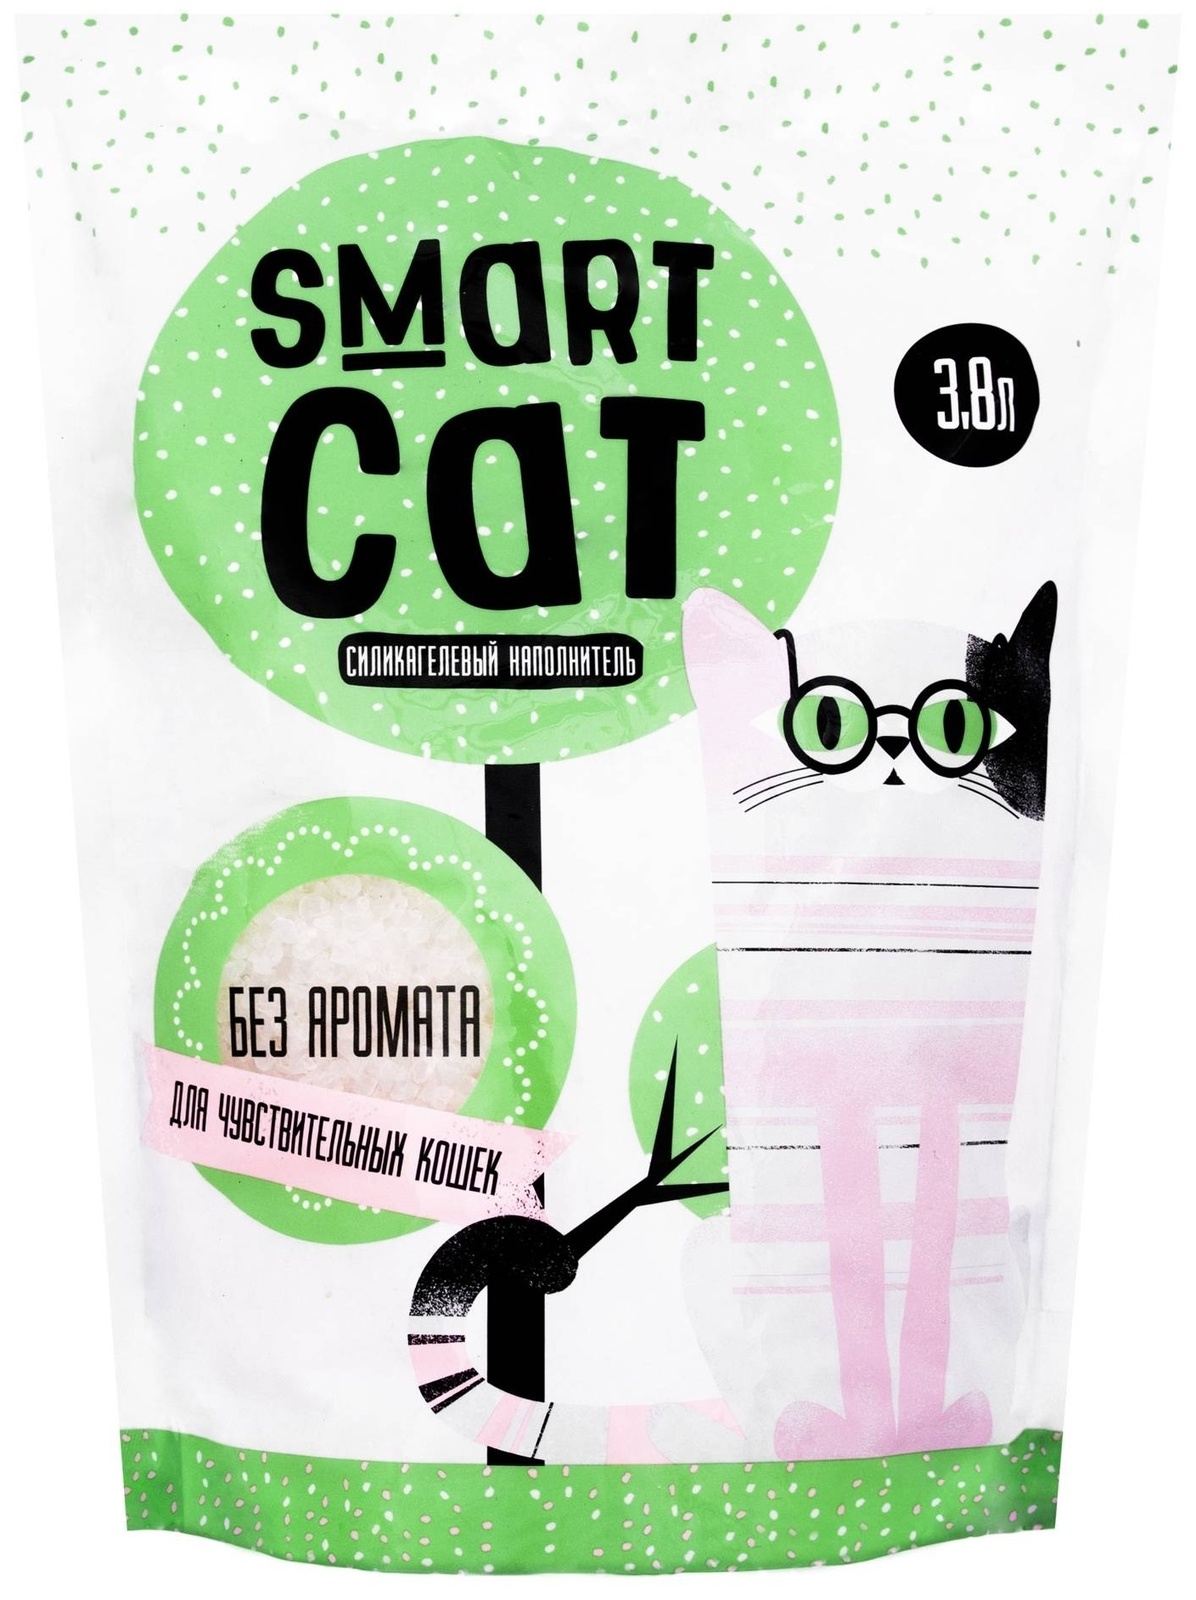 Силикагелевый наполнитель для чувствительных кошек, без аромата (4,37 кг) Smart Cat наполнитель Силикагелевый наполнитель для чувствительных кошек, без аромата (4,37 кг) - фото 1